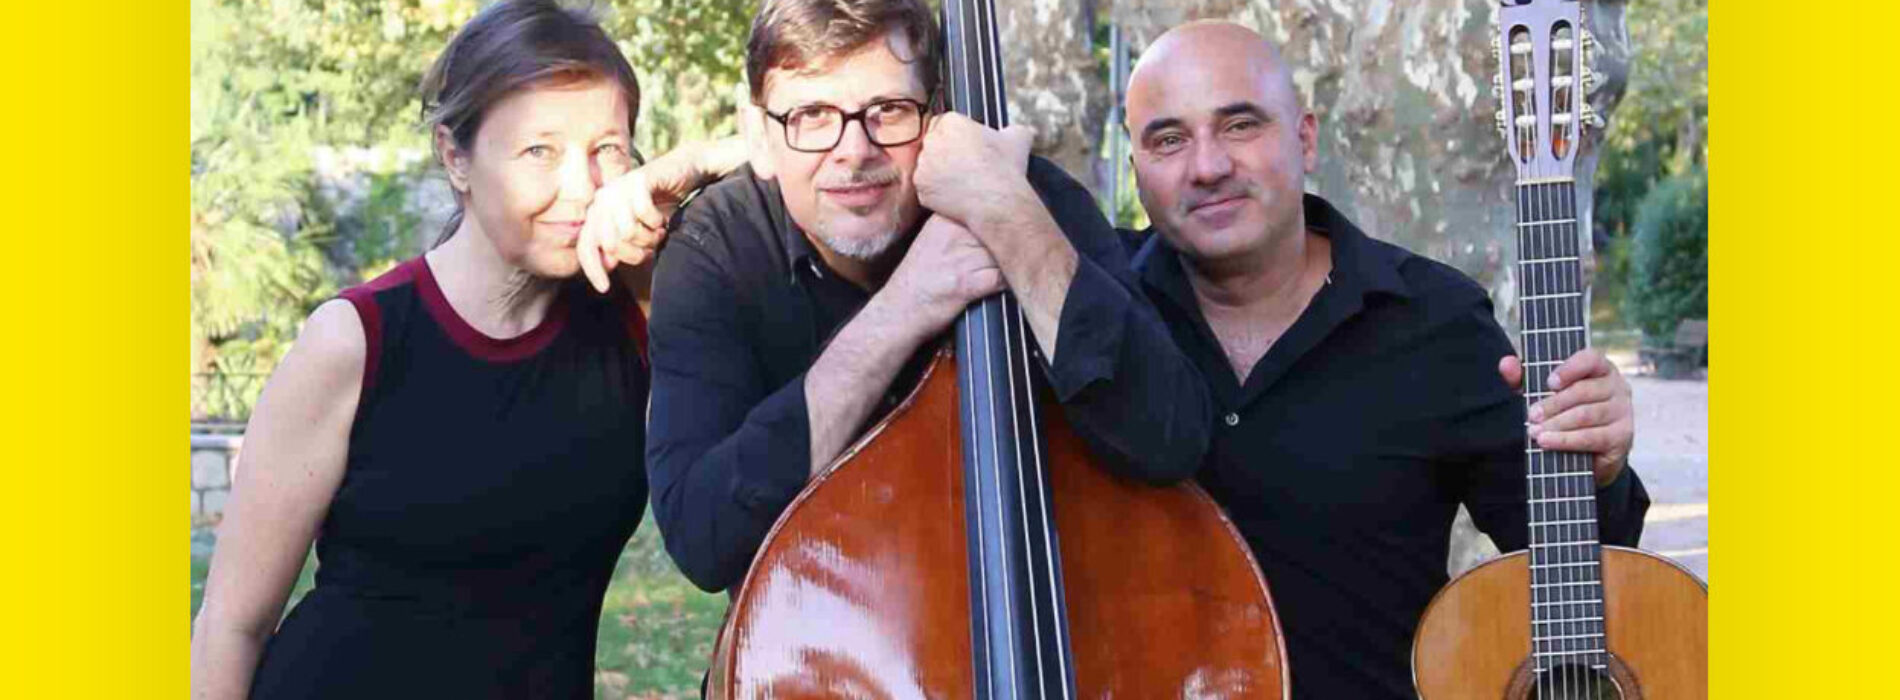 Napoli Roots, il trio Pucci Grillo Castellano al Teatro Civico 14